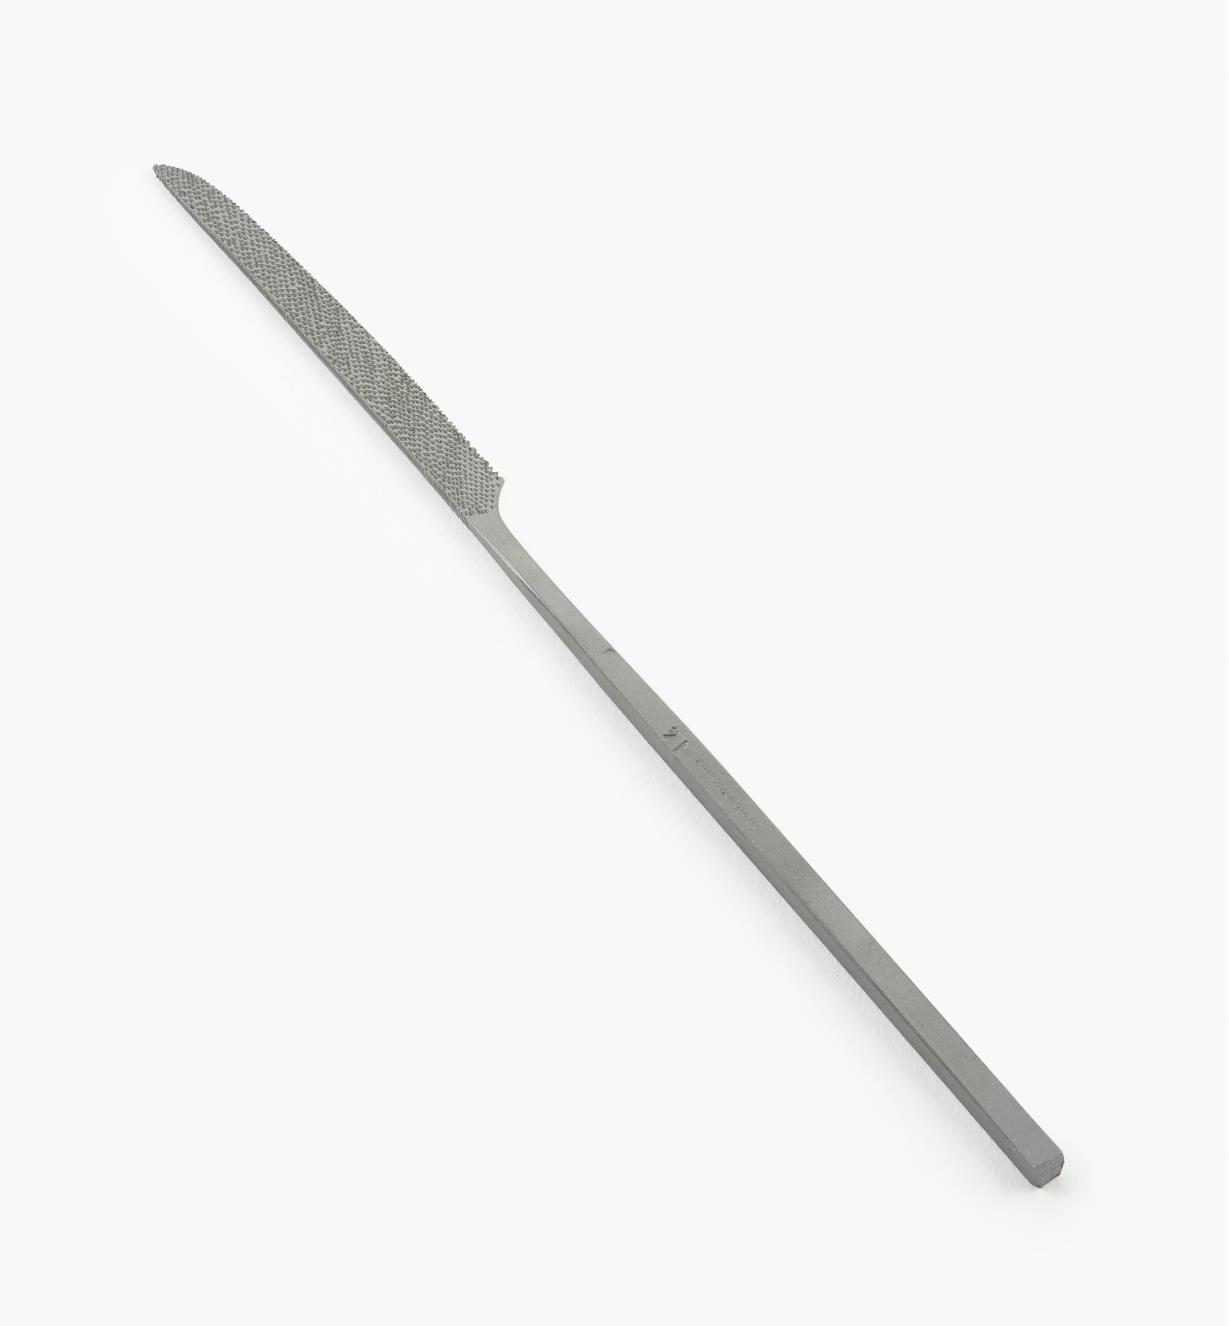 62W3033 - Auriou Knife-Shaped Needle Rasp